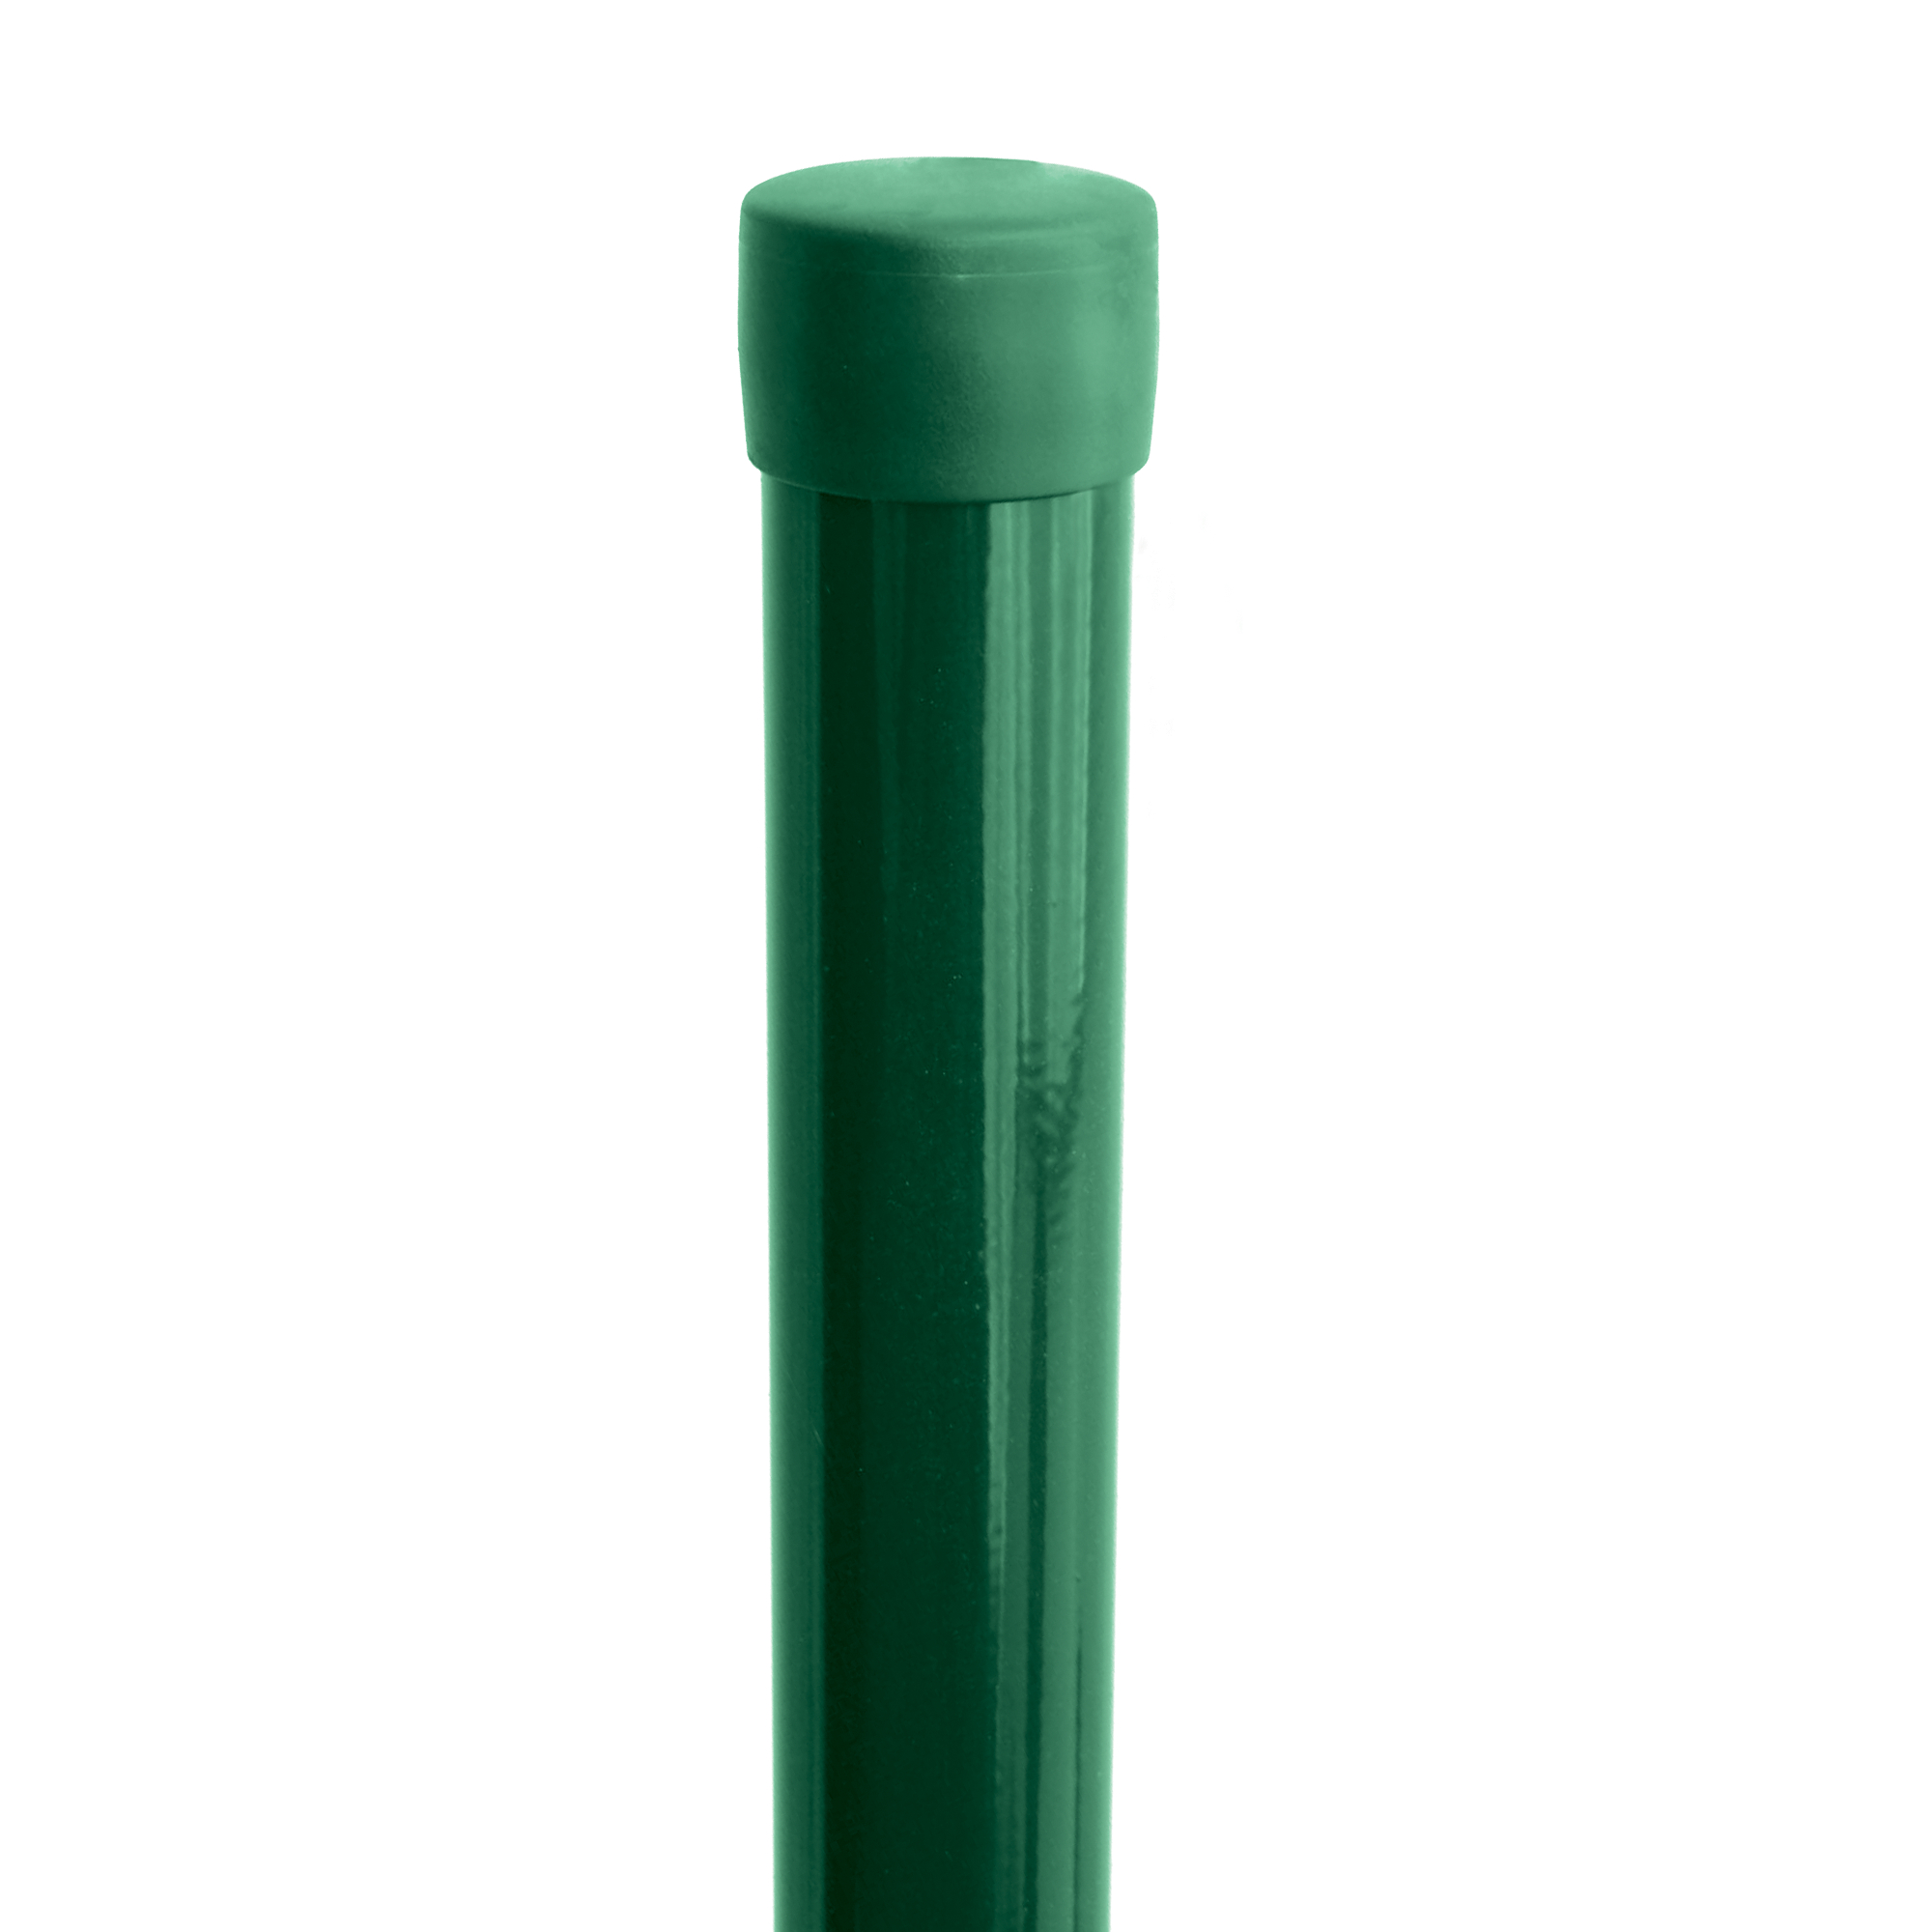 Sloupek kulatý Ideal Zn + PVC bez příchytky zelený průměr 48 mm výška 1